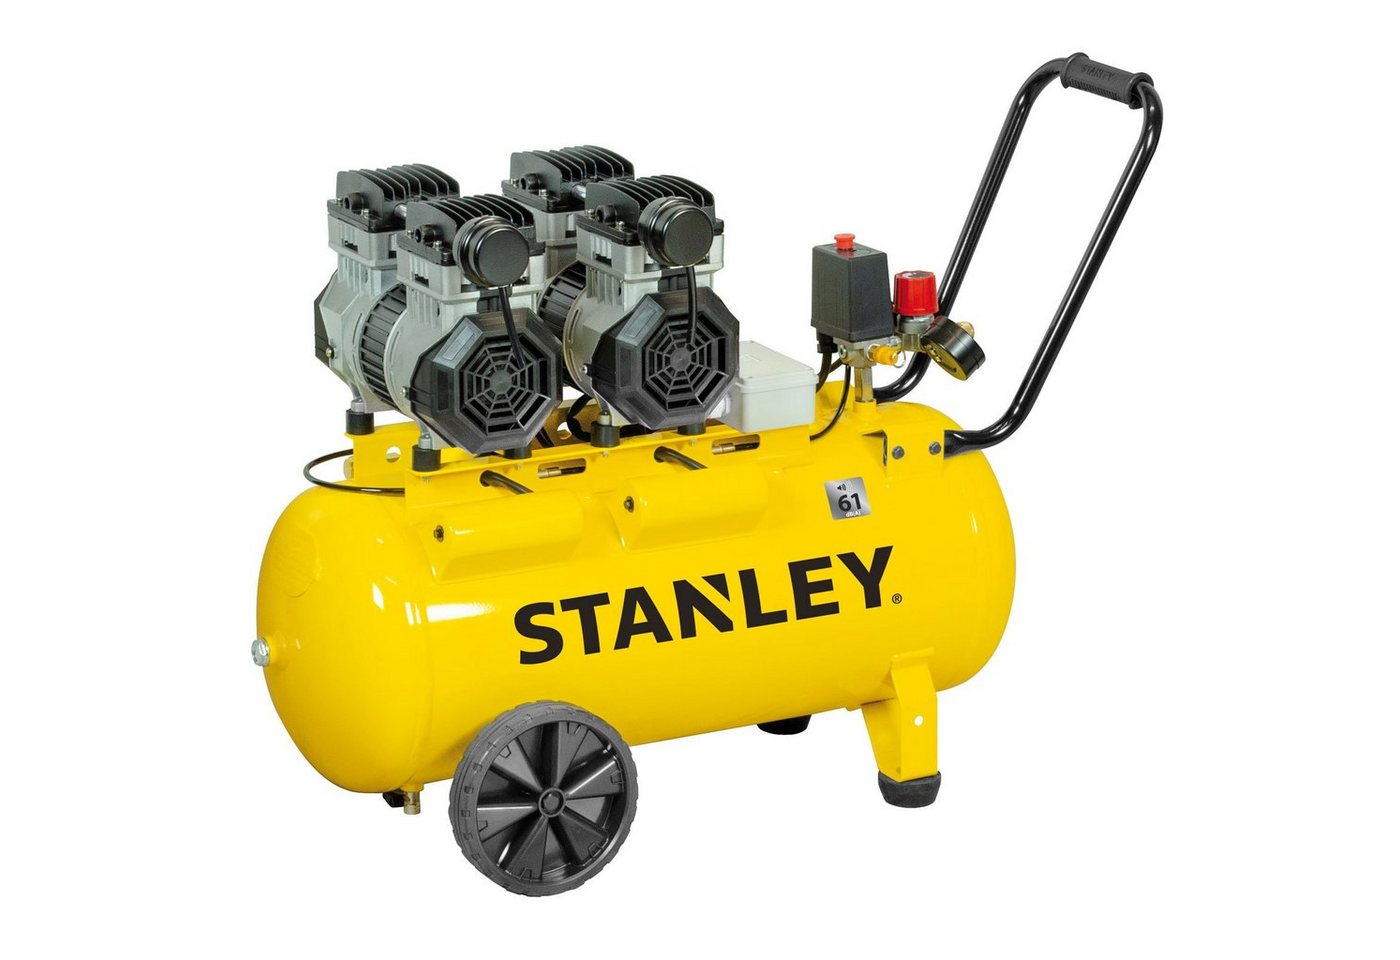 STANLEY Kompressor Silent Kompressor DST 300/8/50 ölfrei SXCMS2652HE 50 Liter, max. 8 bar, 50 l von STANLEY